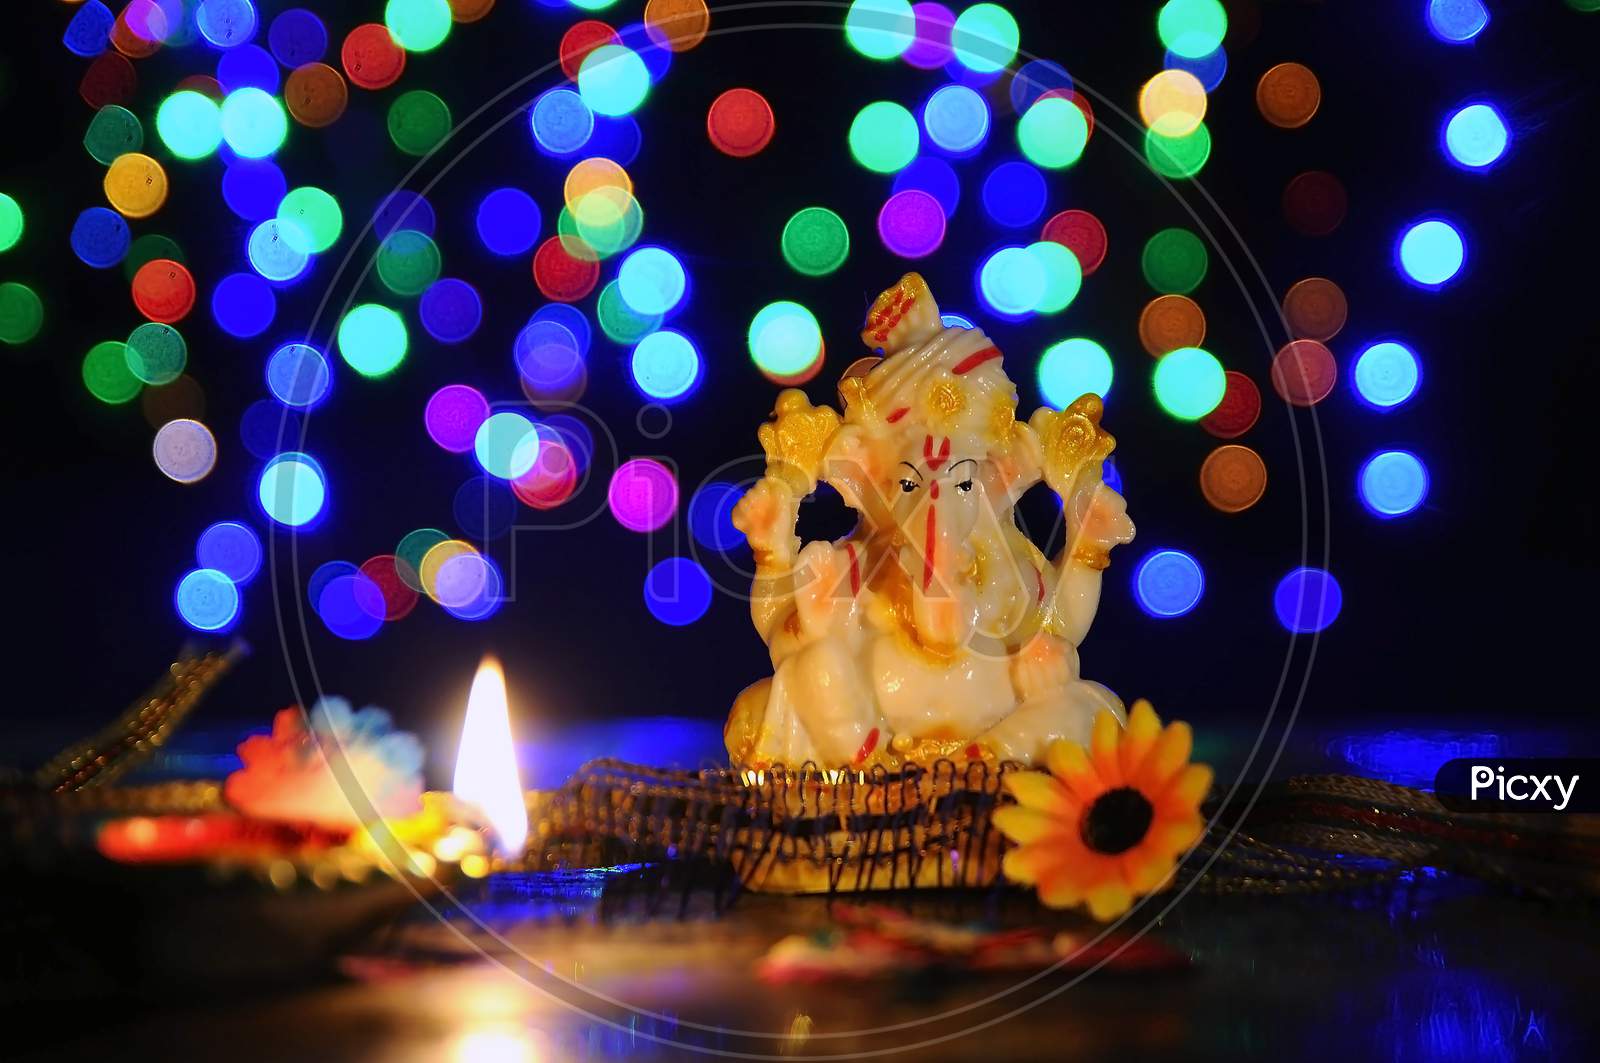 Shree Ganesha in ceremonial lights.